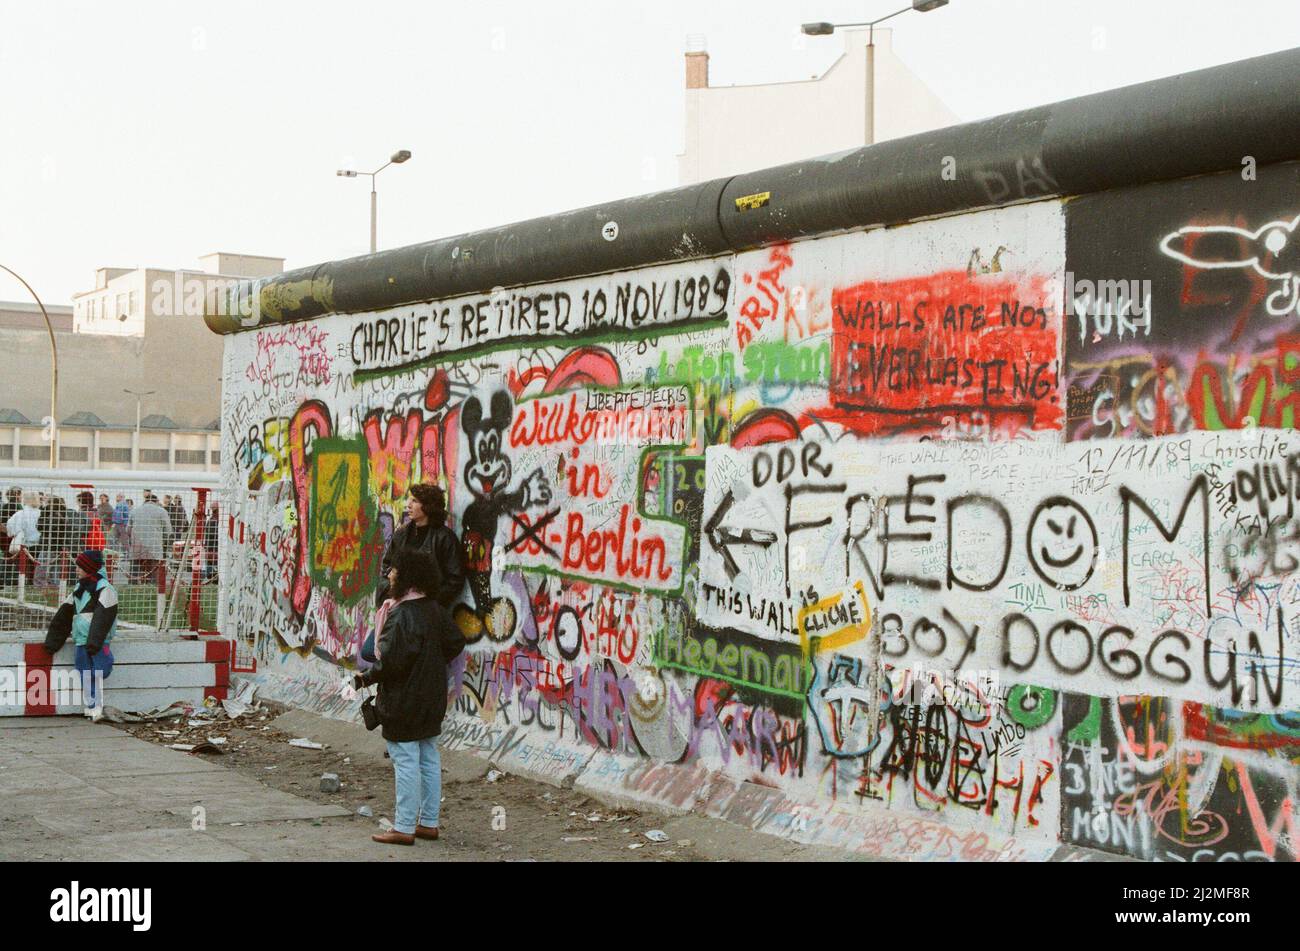 West-Berlin, Deutschland, 10 Tage nach Lockerung des Grenzübergangs durch die DDR-Regierung. Dies ermöglichte es den ostdeutschen Bürgern, in West-Berlin und West-Deutschland zu überqueren, Aufnahmen vom 19.. November 1989. Im Bild: Berliner Mauer mit kürzlich hinzugefügter Graffiti mit der Aussage 'Charlie's Retired 10 Nov 1989', in Bezug auf den alliierten Checkpoint Charlie Stockfoto